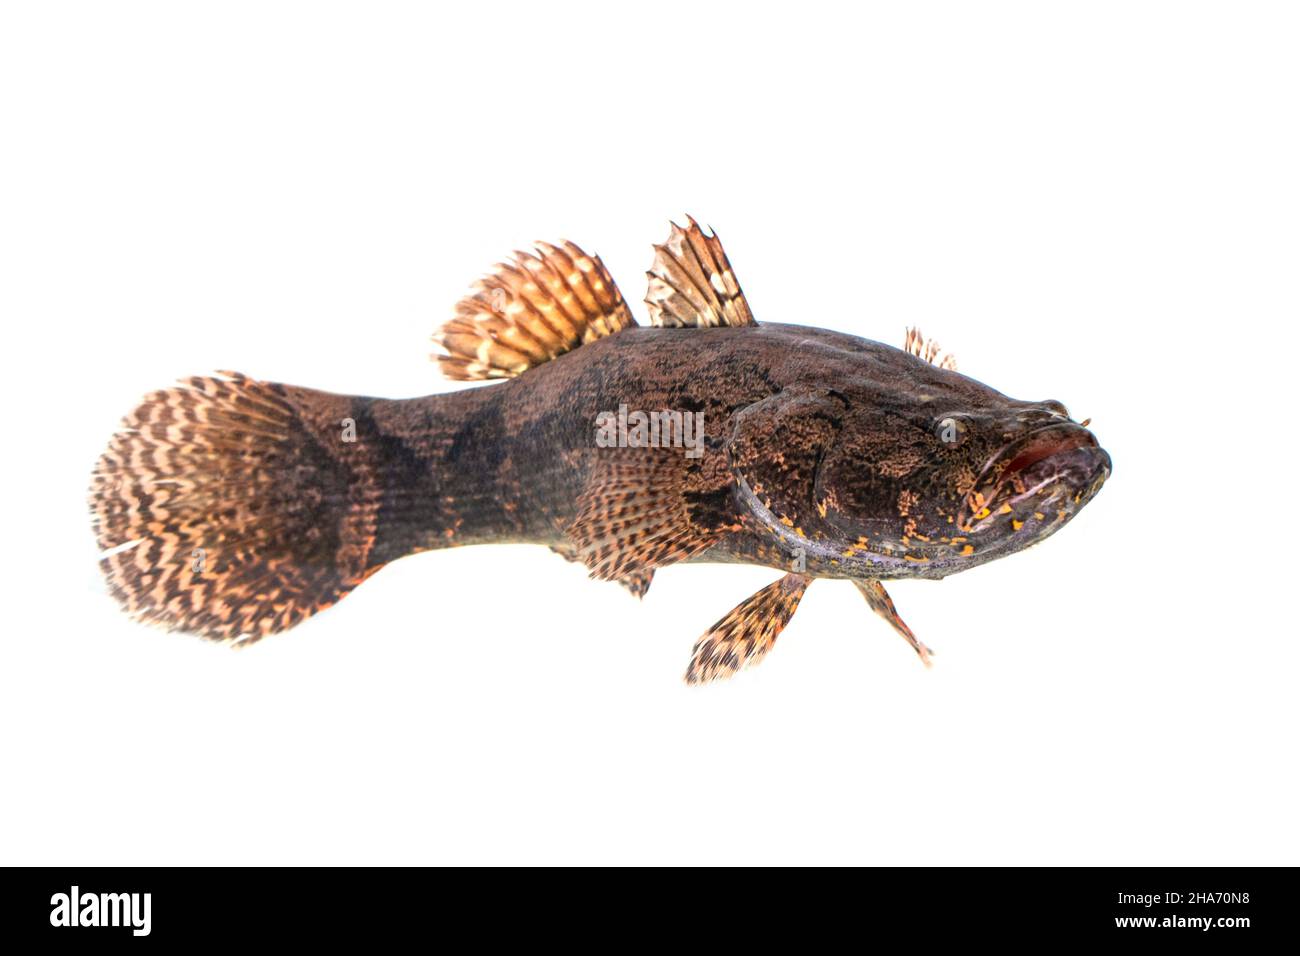 Image de poisson de gobby frais sur fond blanc.Animaux aquatiques. Banque D'Images